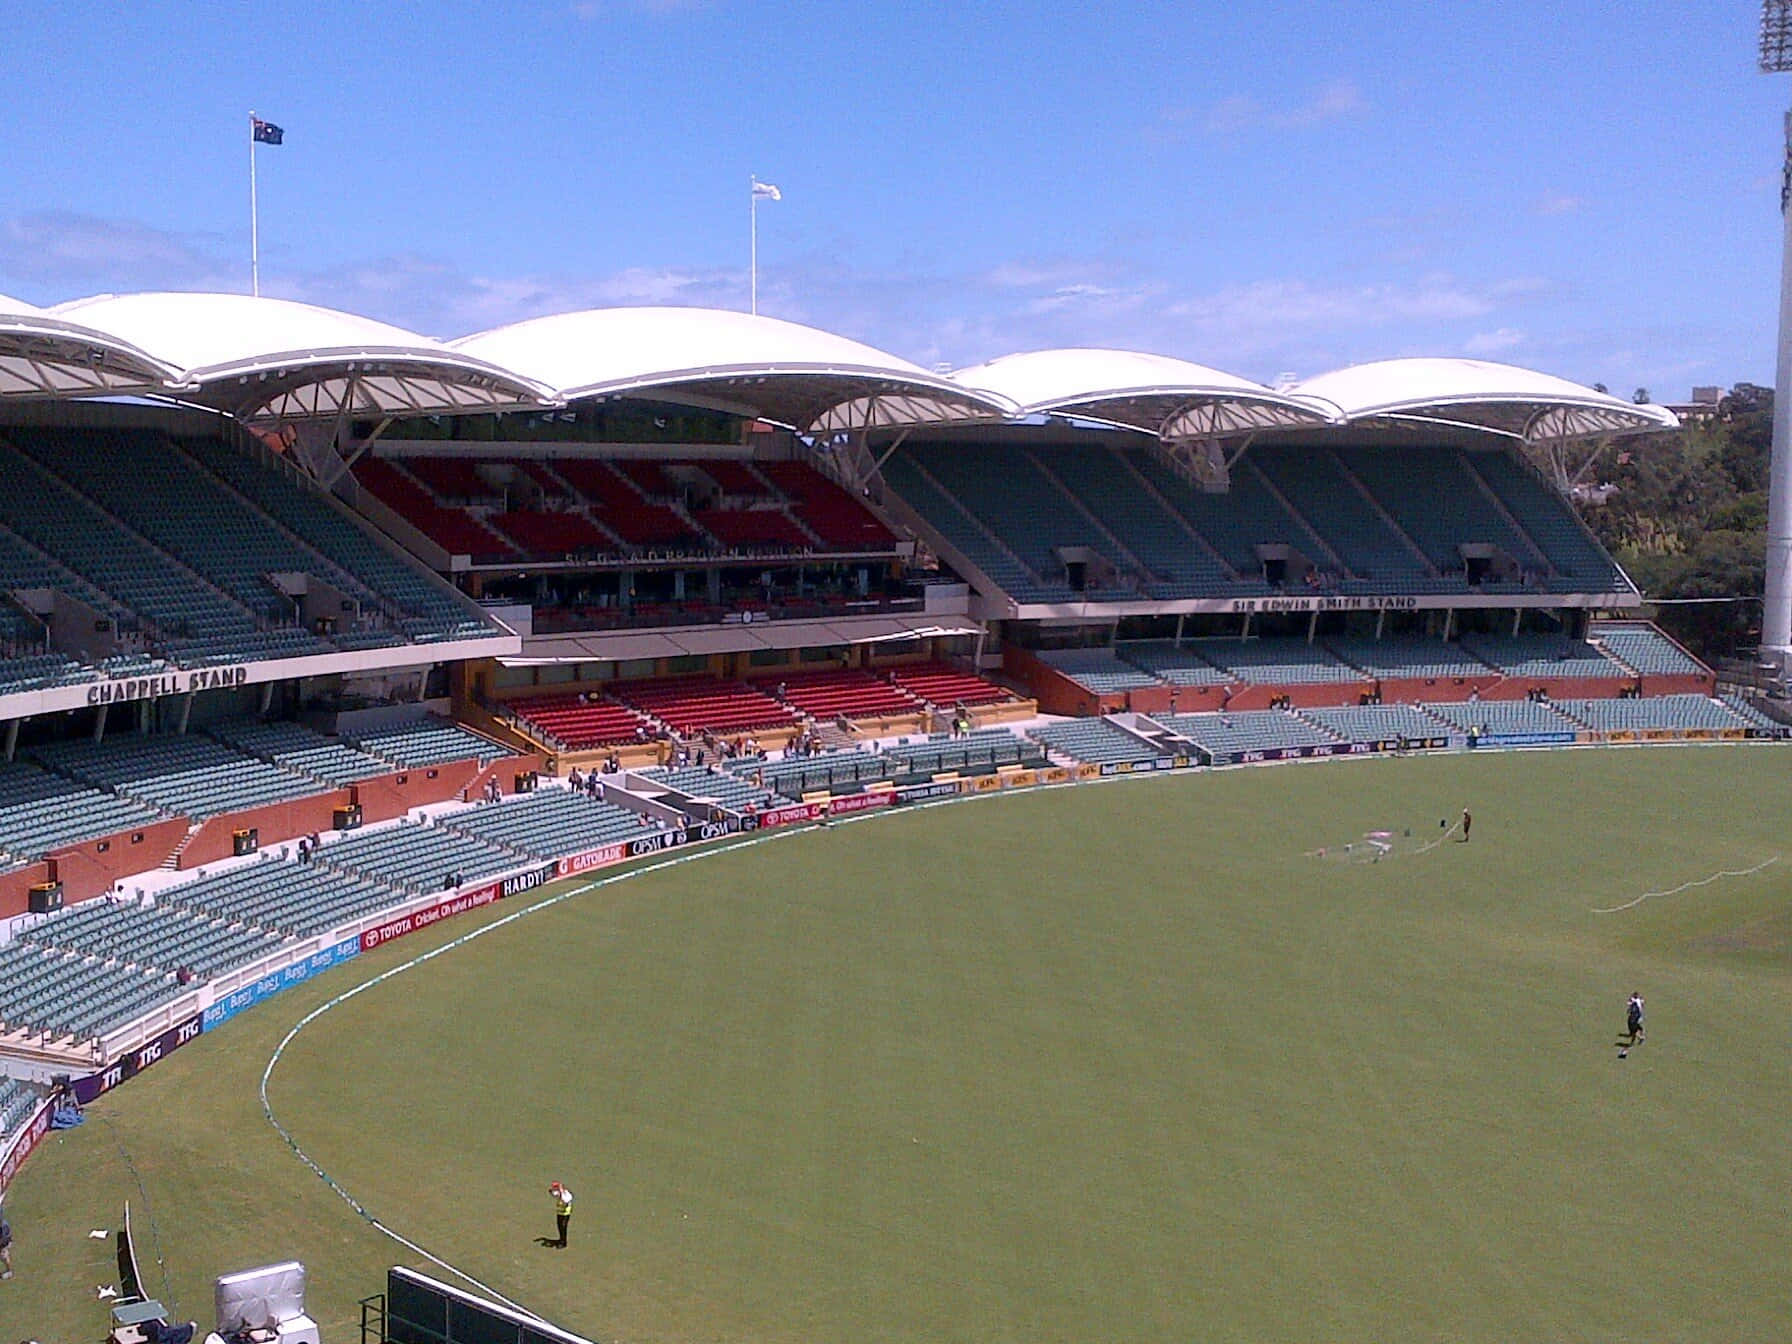 Adelaide Oval Stadium View.jpg Wallpaper